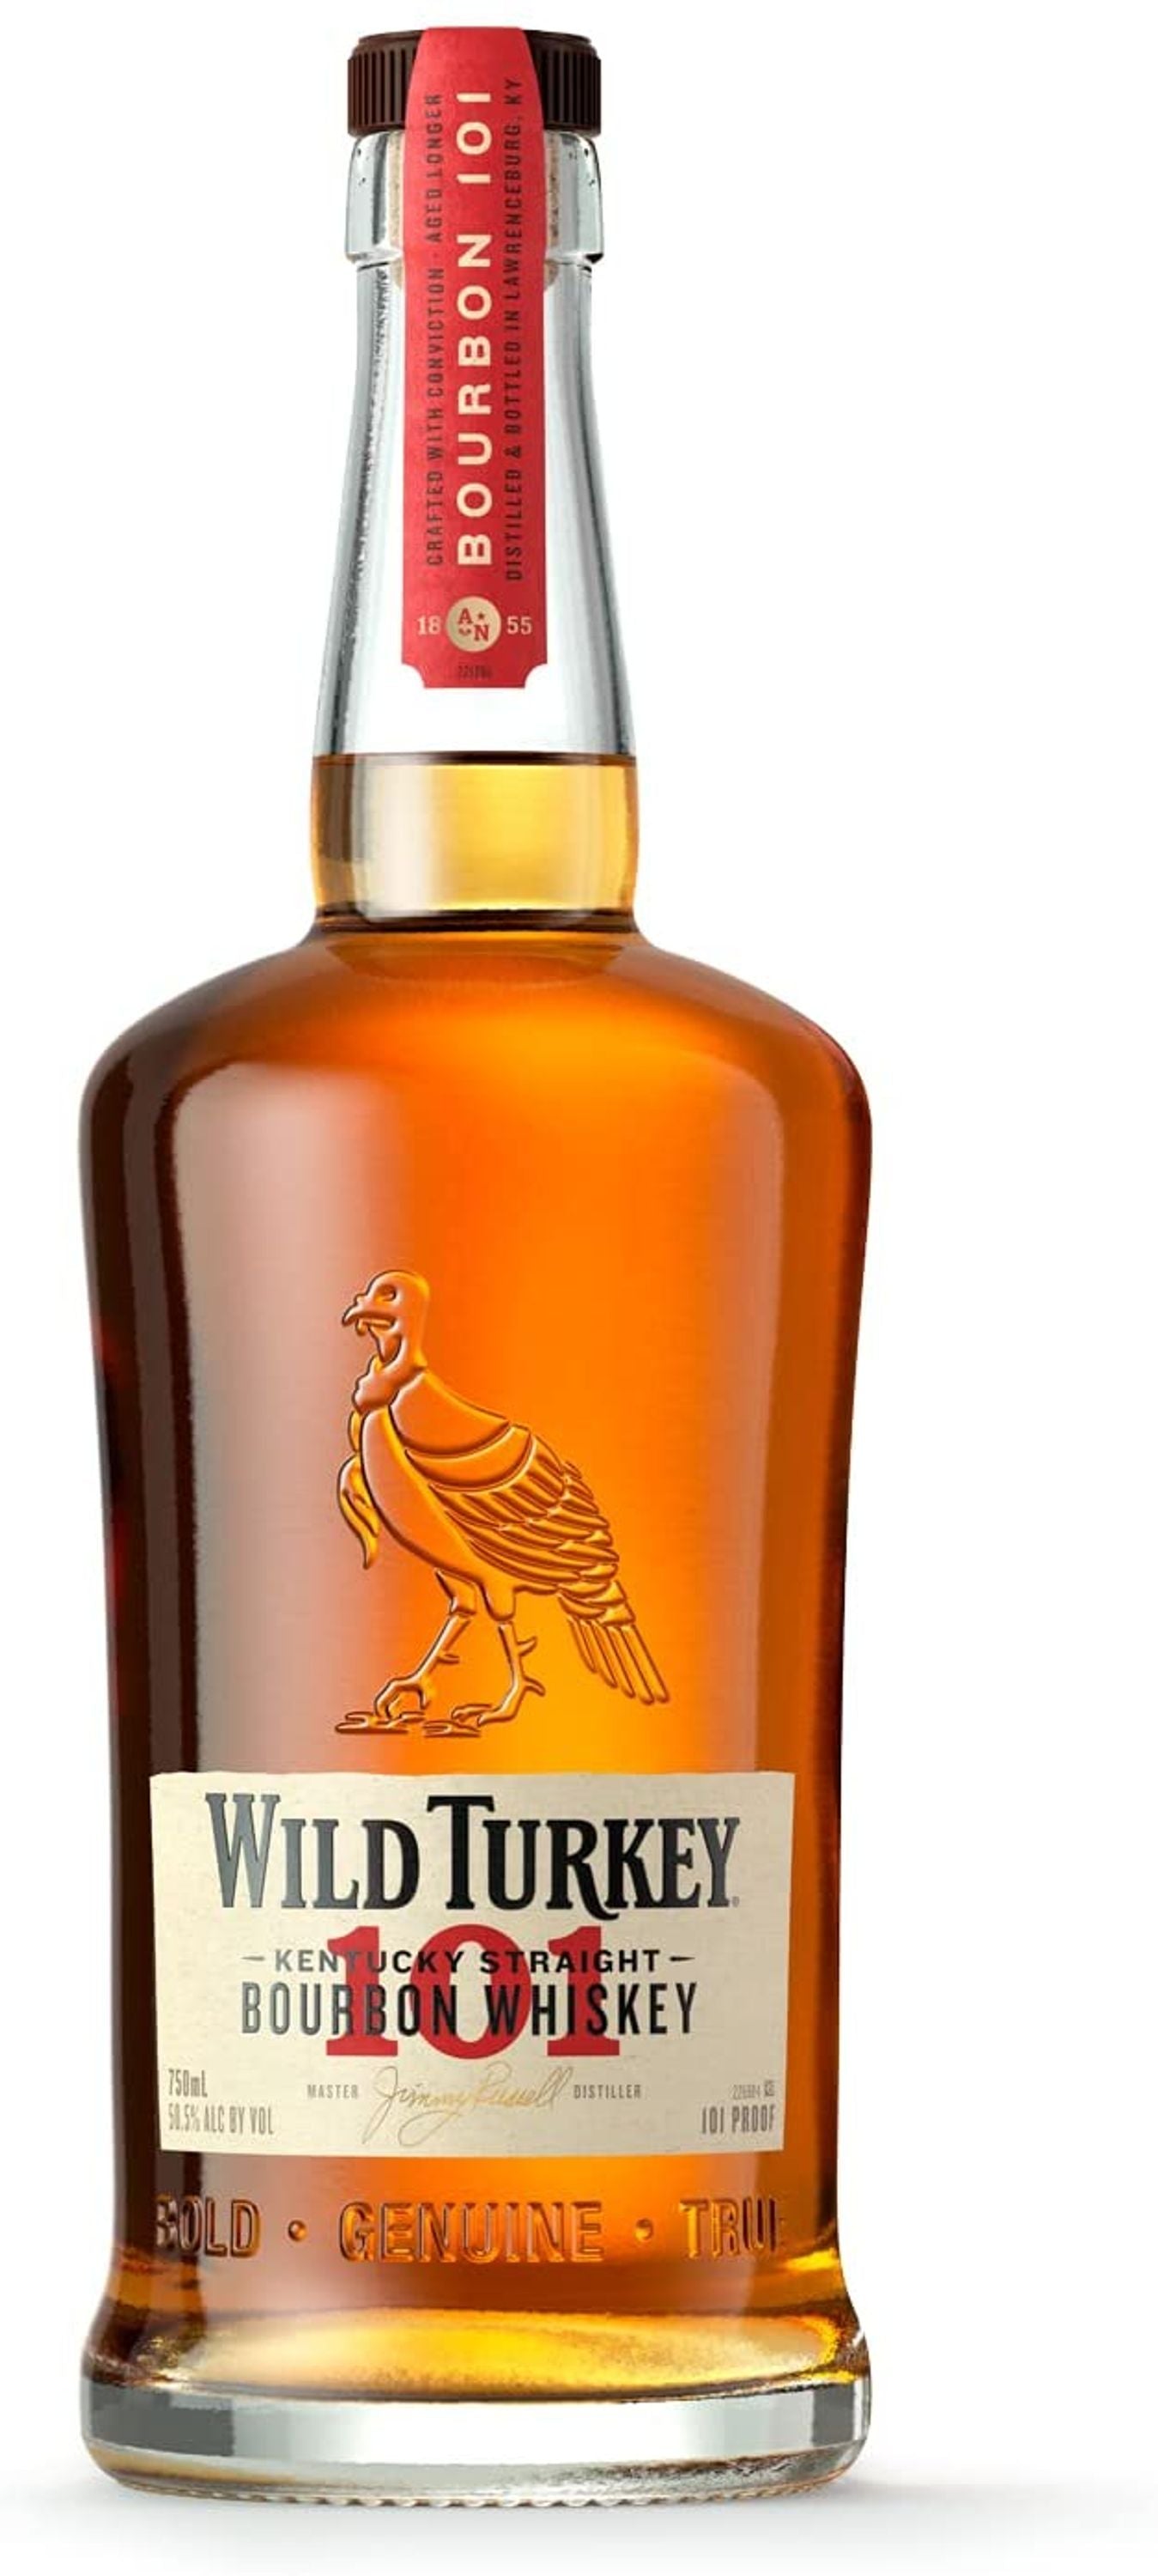 Wild Turkey 101 Proof Kentucky Straight Bourbon Whisky 0,7l, alk. 50,5 tilavuusprosenttia.